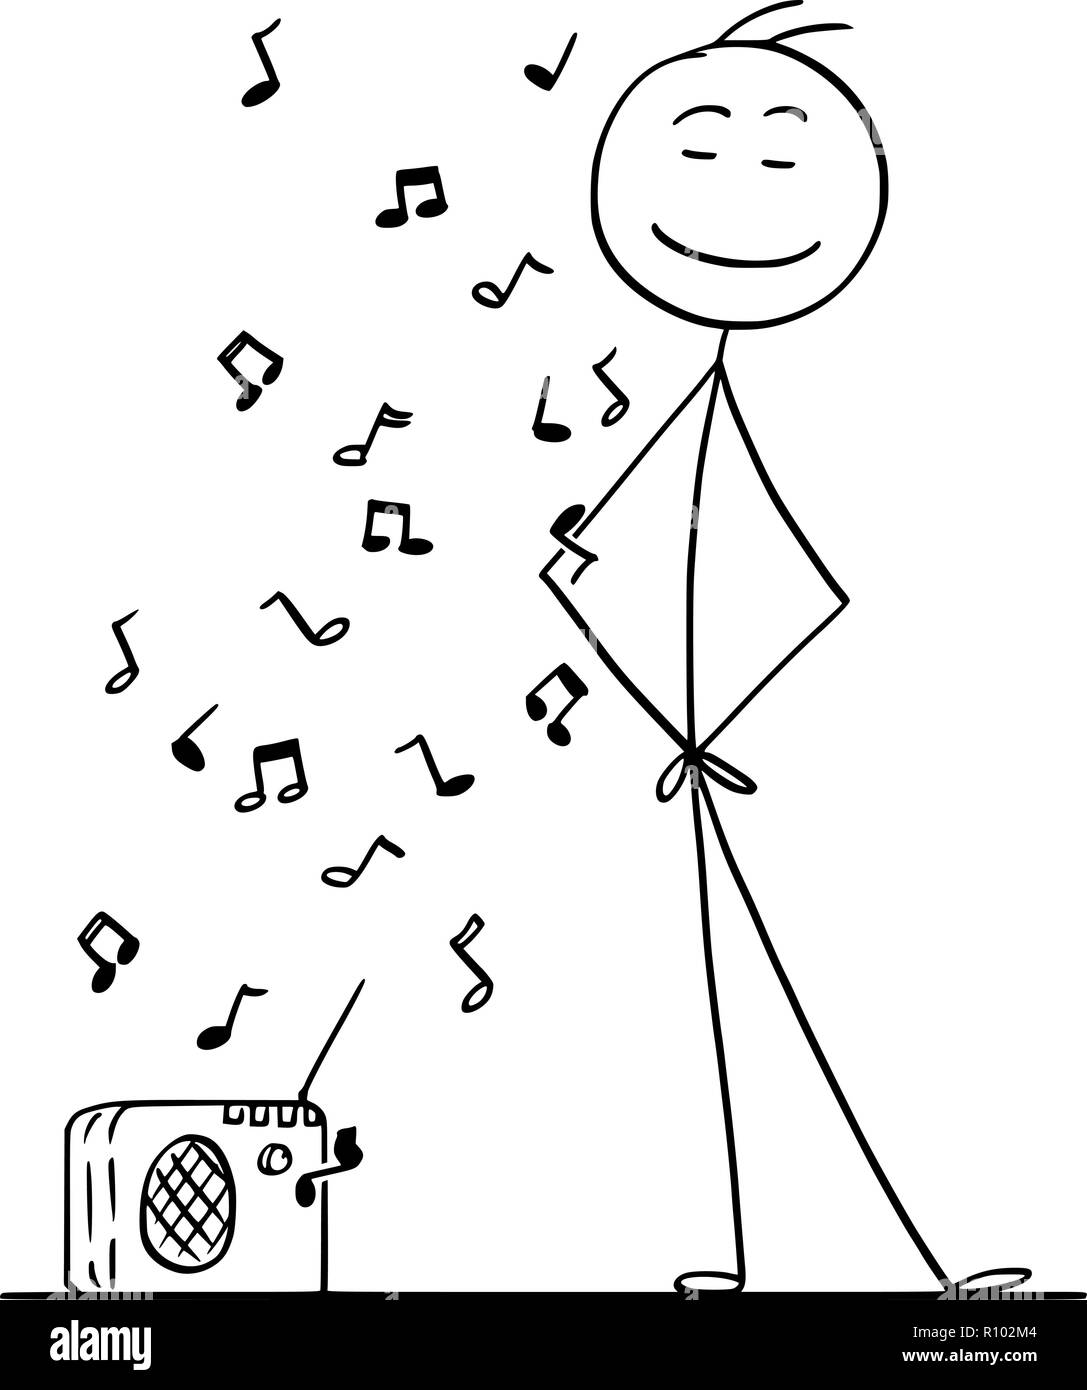 Cartoon stick disegno illustrazione concettuale dell'uomo godendo di un ascolto di musica da piccola radio. Illustrazione Vettoriale